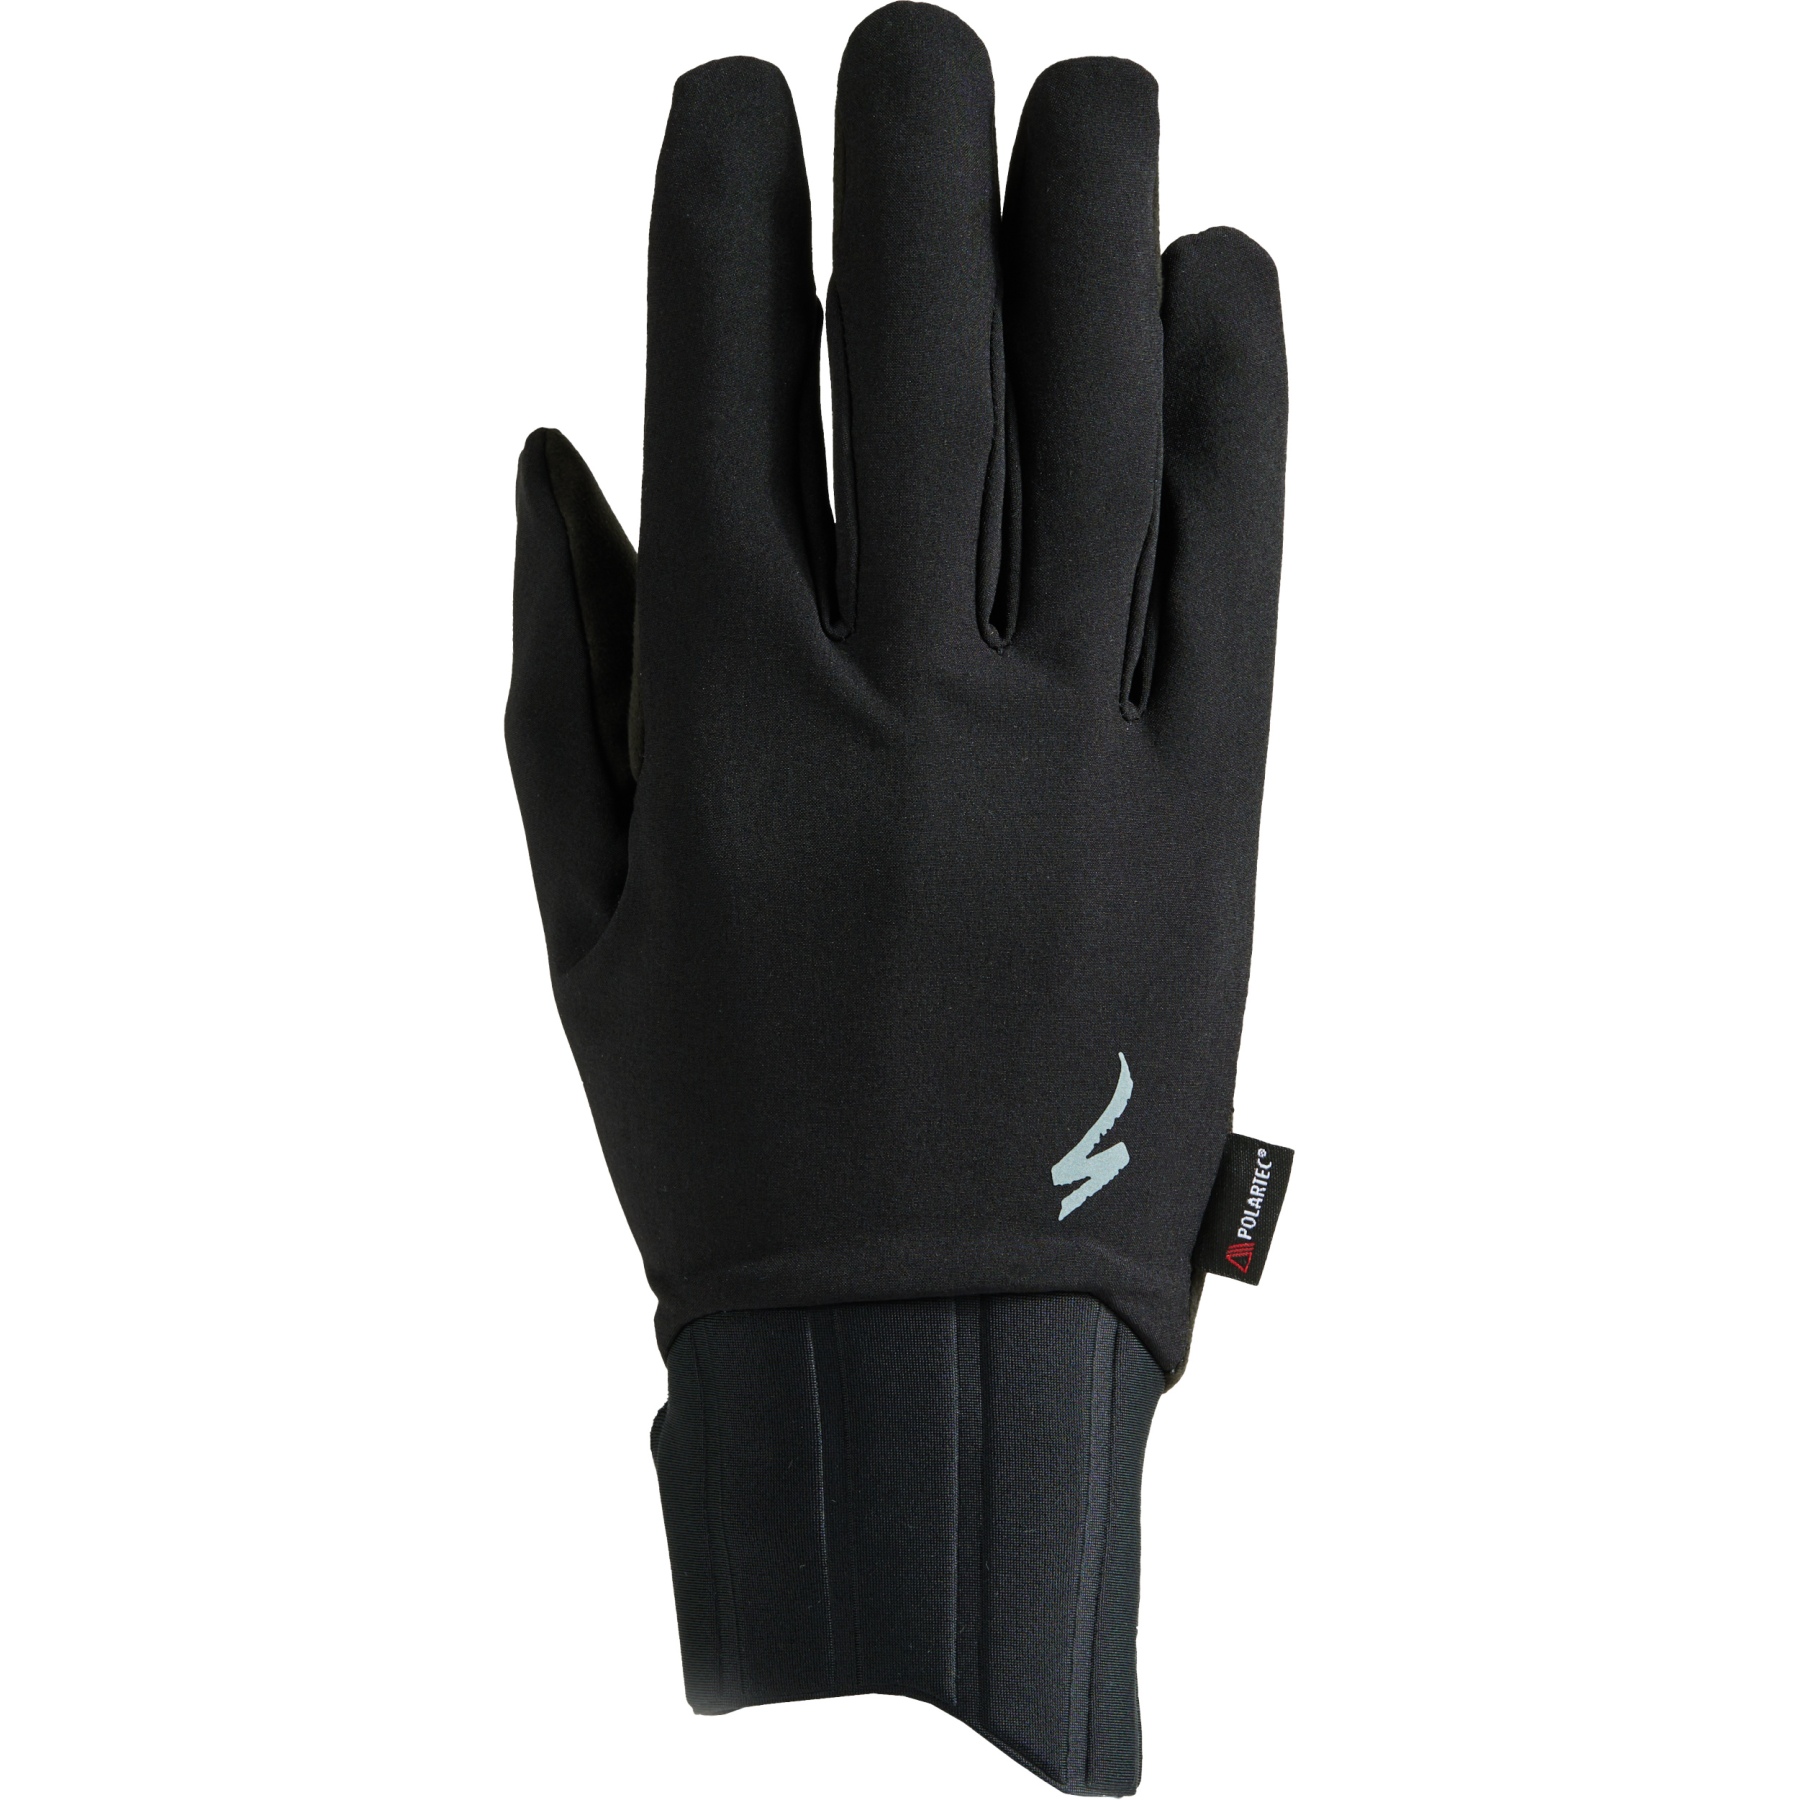 Produktbild von Specialized Neoshell Vollfinger-Handschuhe - schwarz